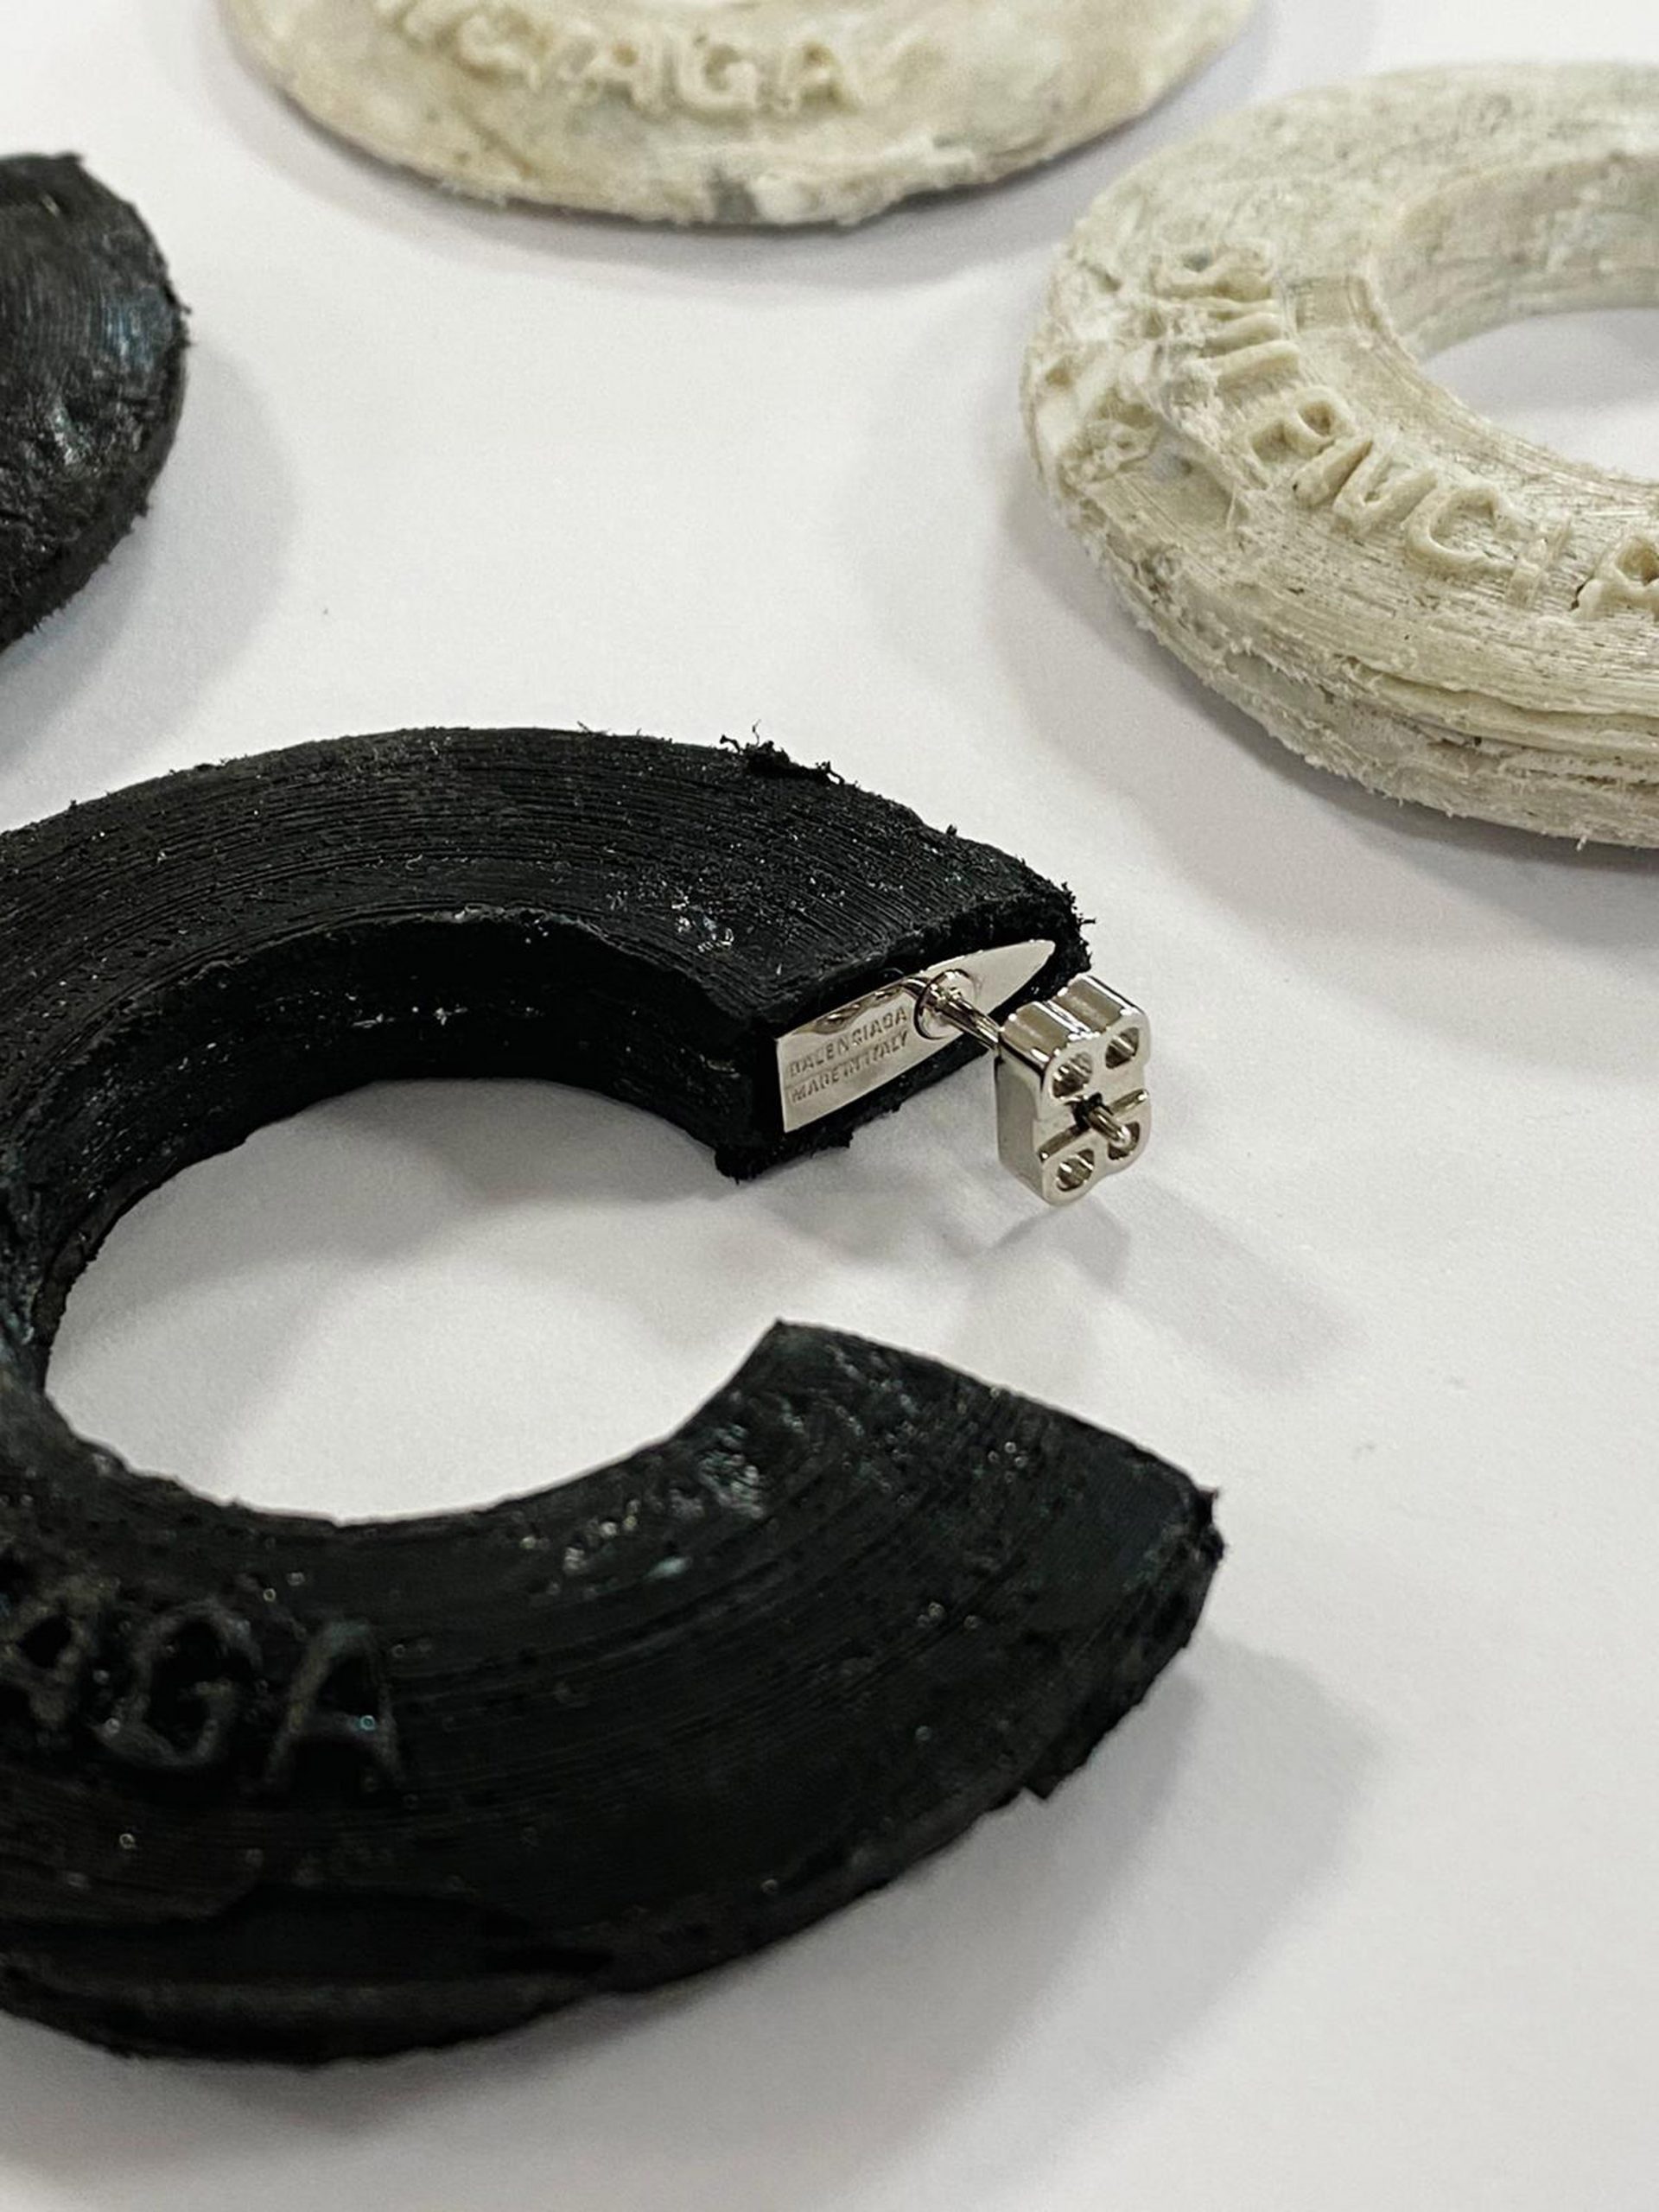 Livne designs jewellery for from ocean plastic